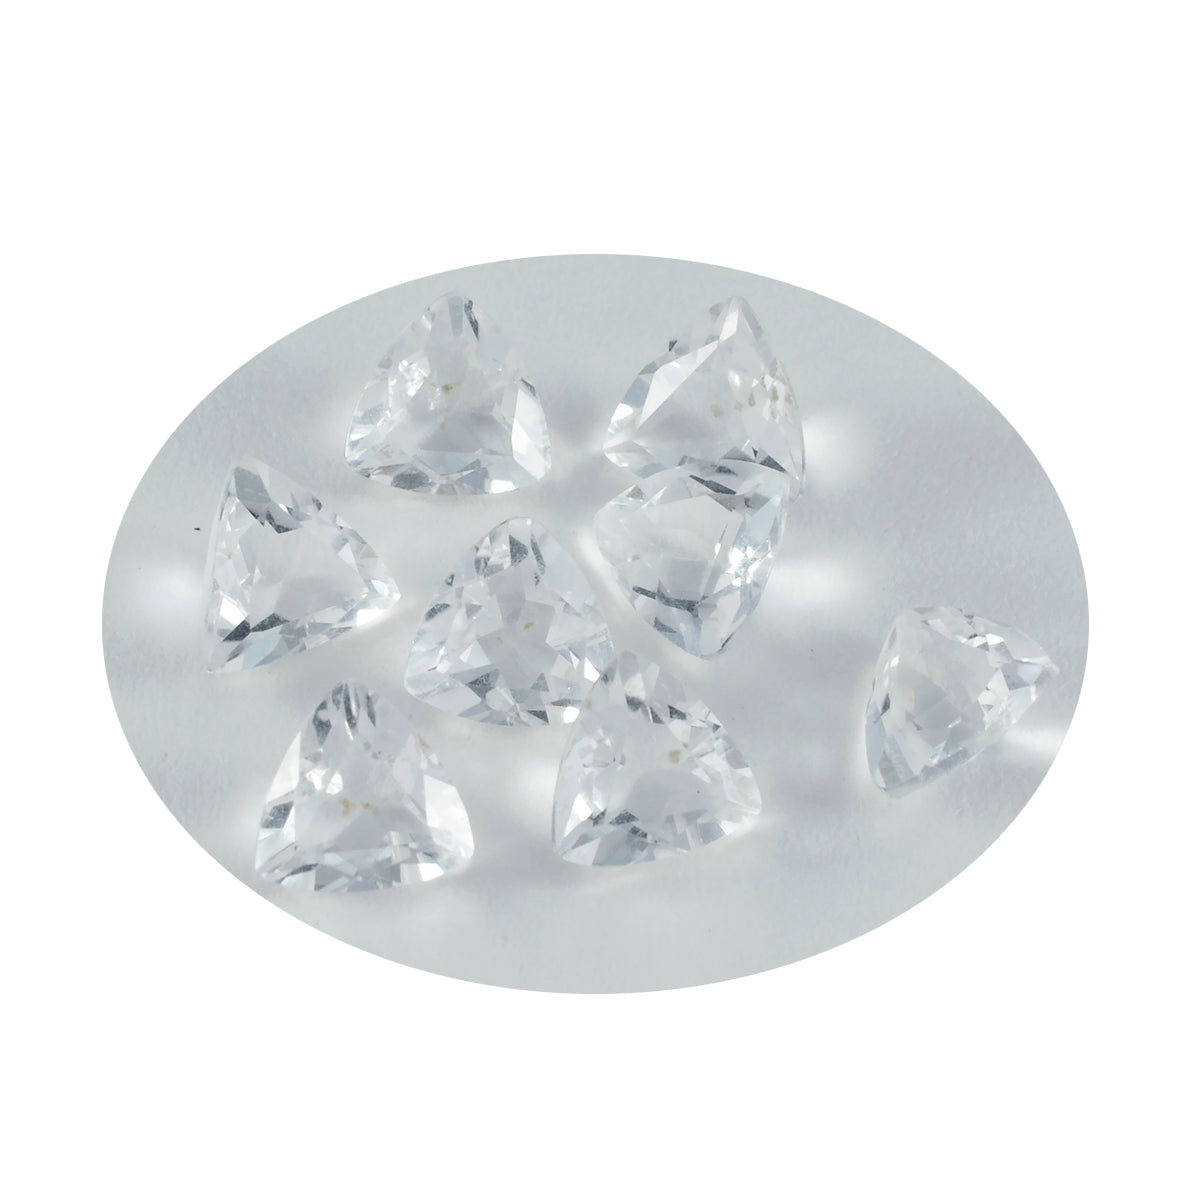 Riyogems 1PC wit kristalkwarts gefacetteerd 9x9 mm biljoen vorm schoonheid kwaliteit losse edelstenen